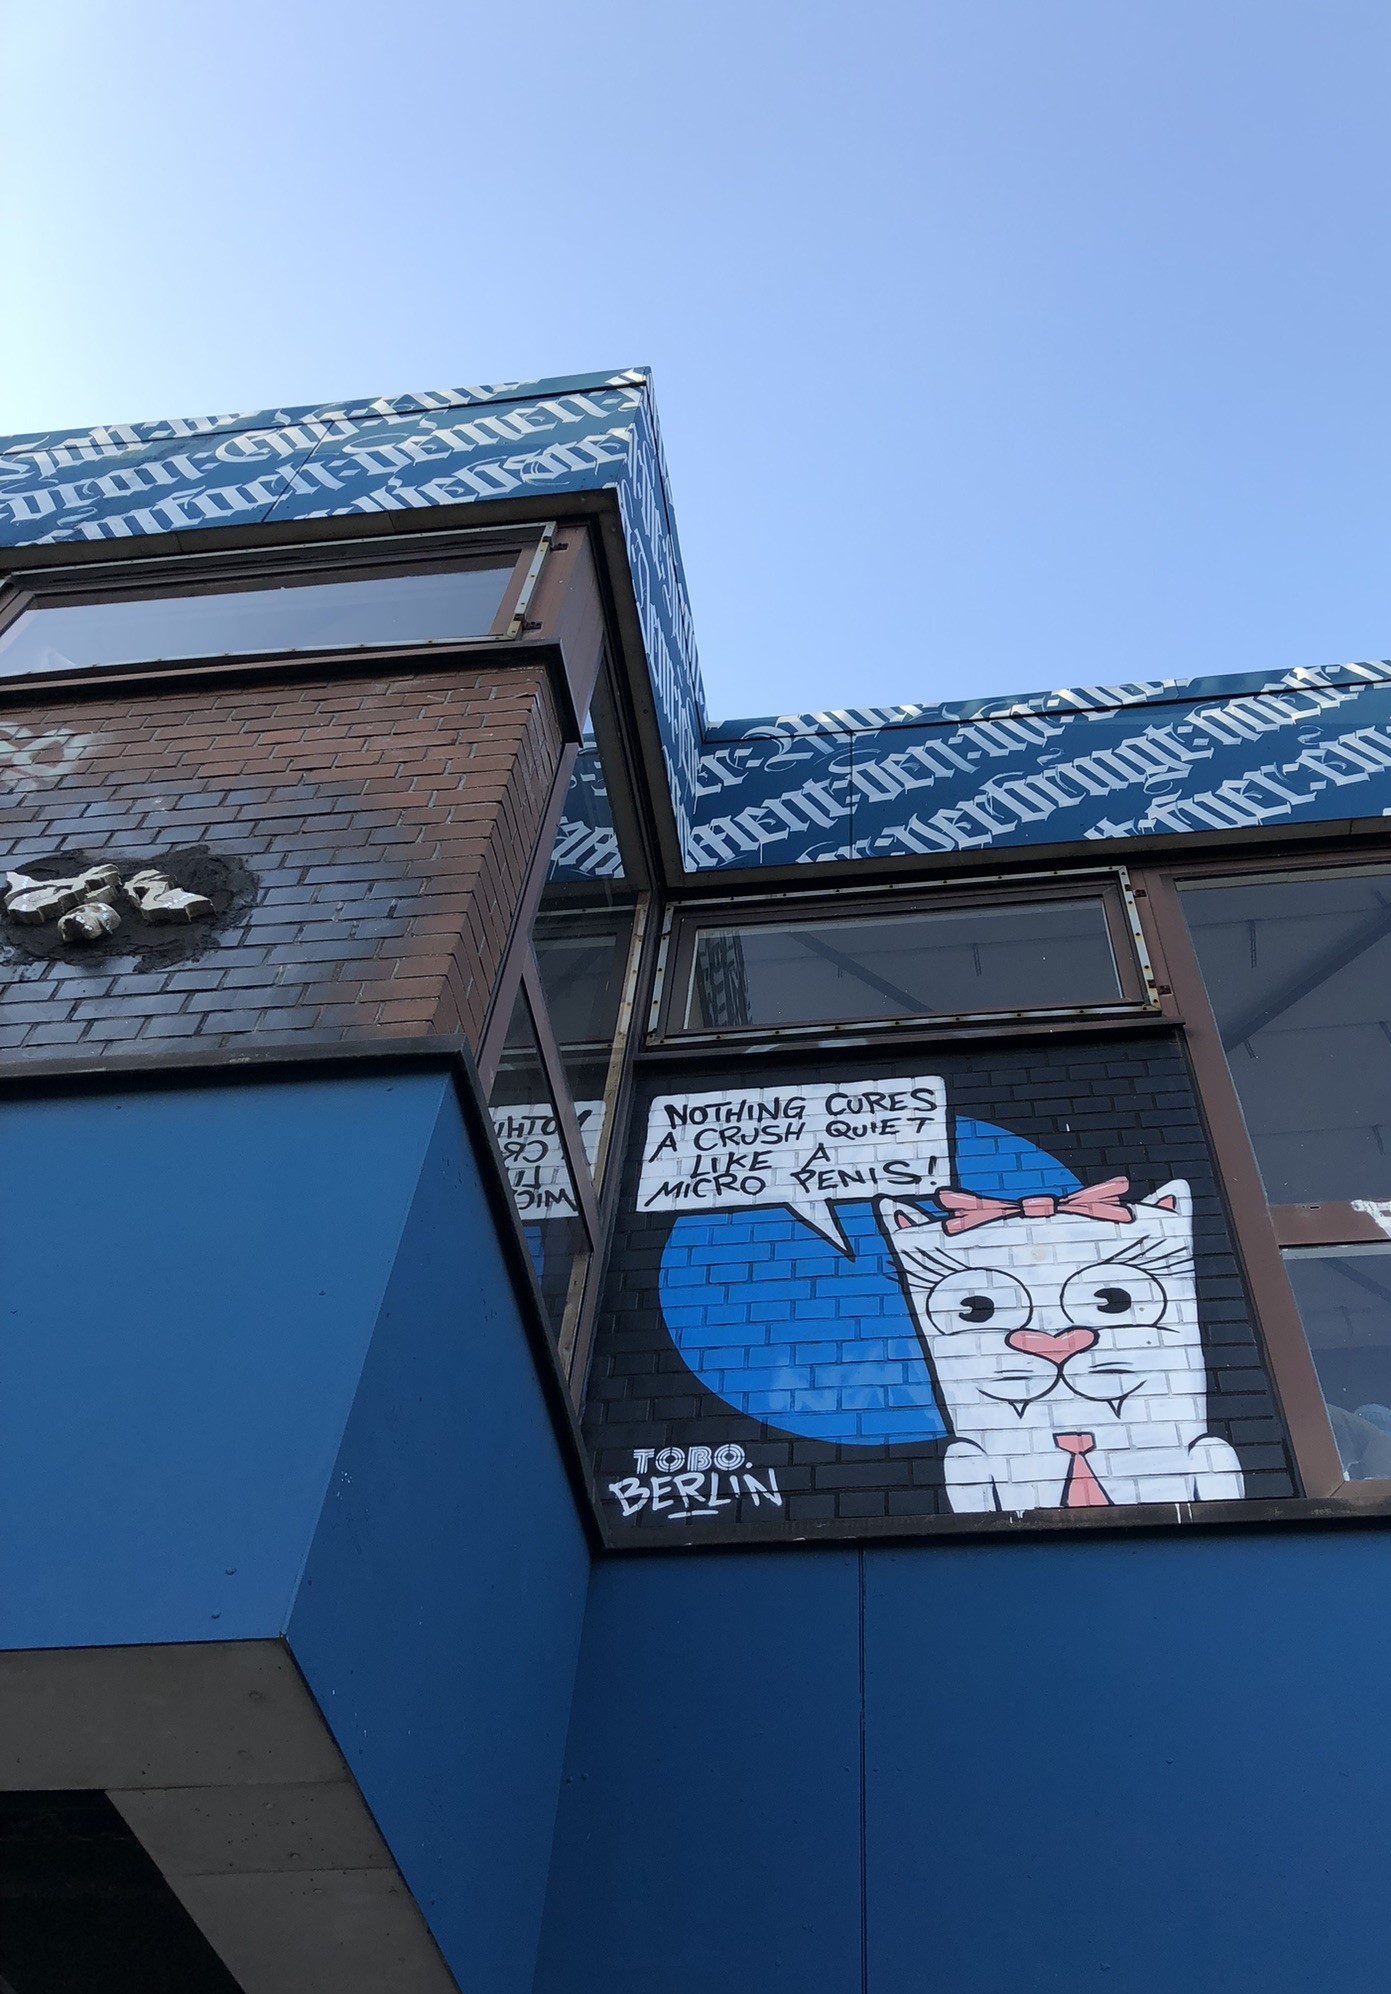 Katze mit Sprechblase "nothing cures a crush quiet like a mico penis" - Graffiti von TOBO am Kantinengebäude am Eingang der Radarstation Teufelsberg